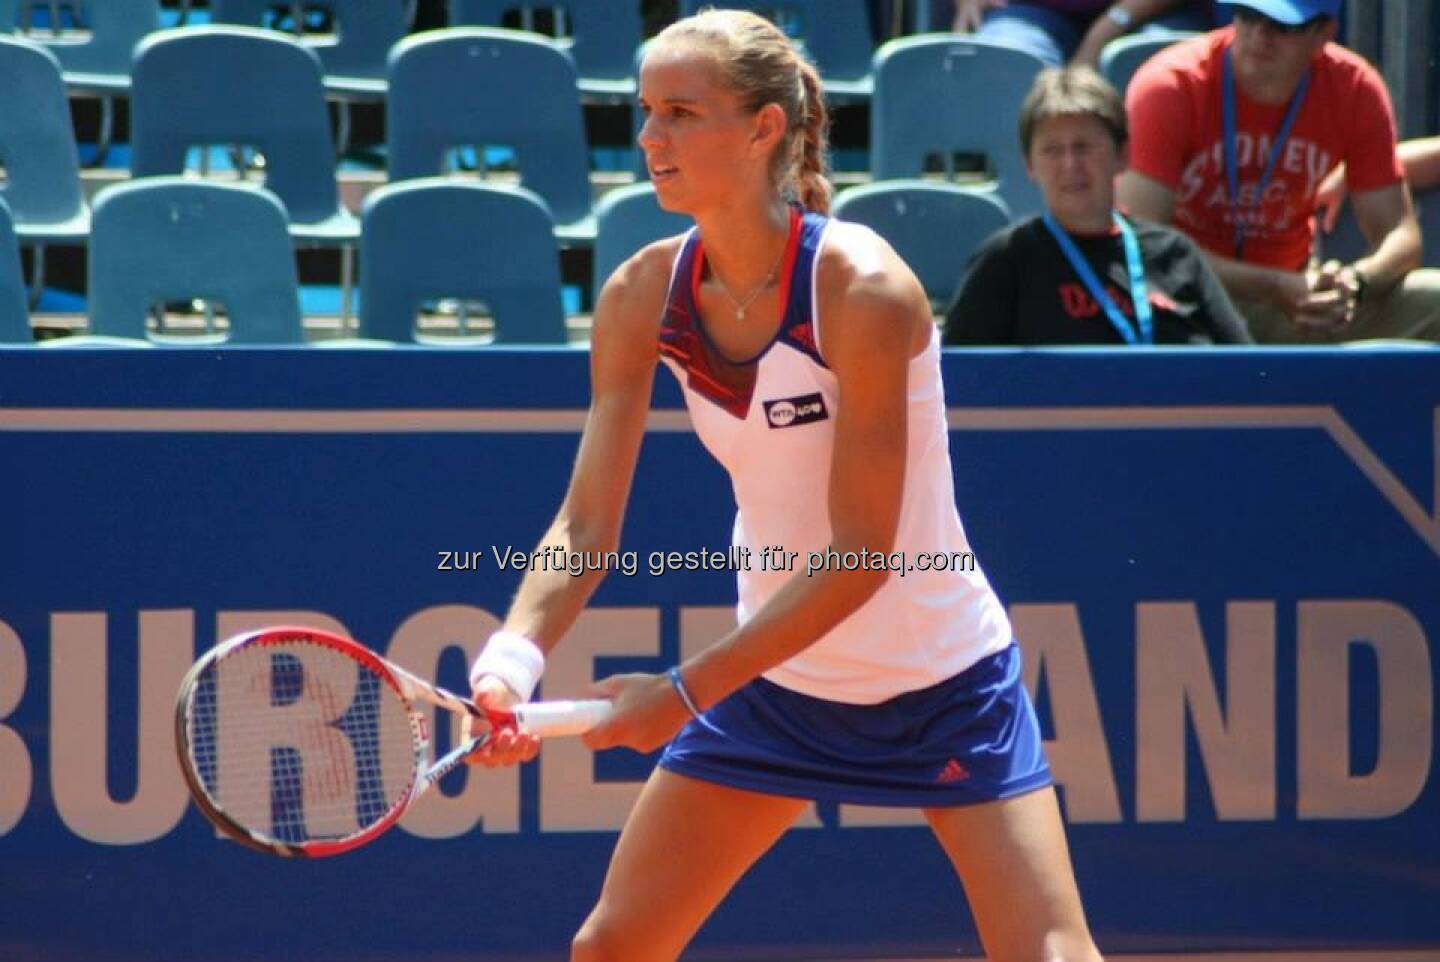 Arantxa Rus beim Nürnberger Gastein Ladies, Tennis - mehr unter https://www.facebook.com/GasteinLadies